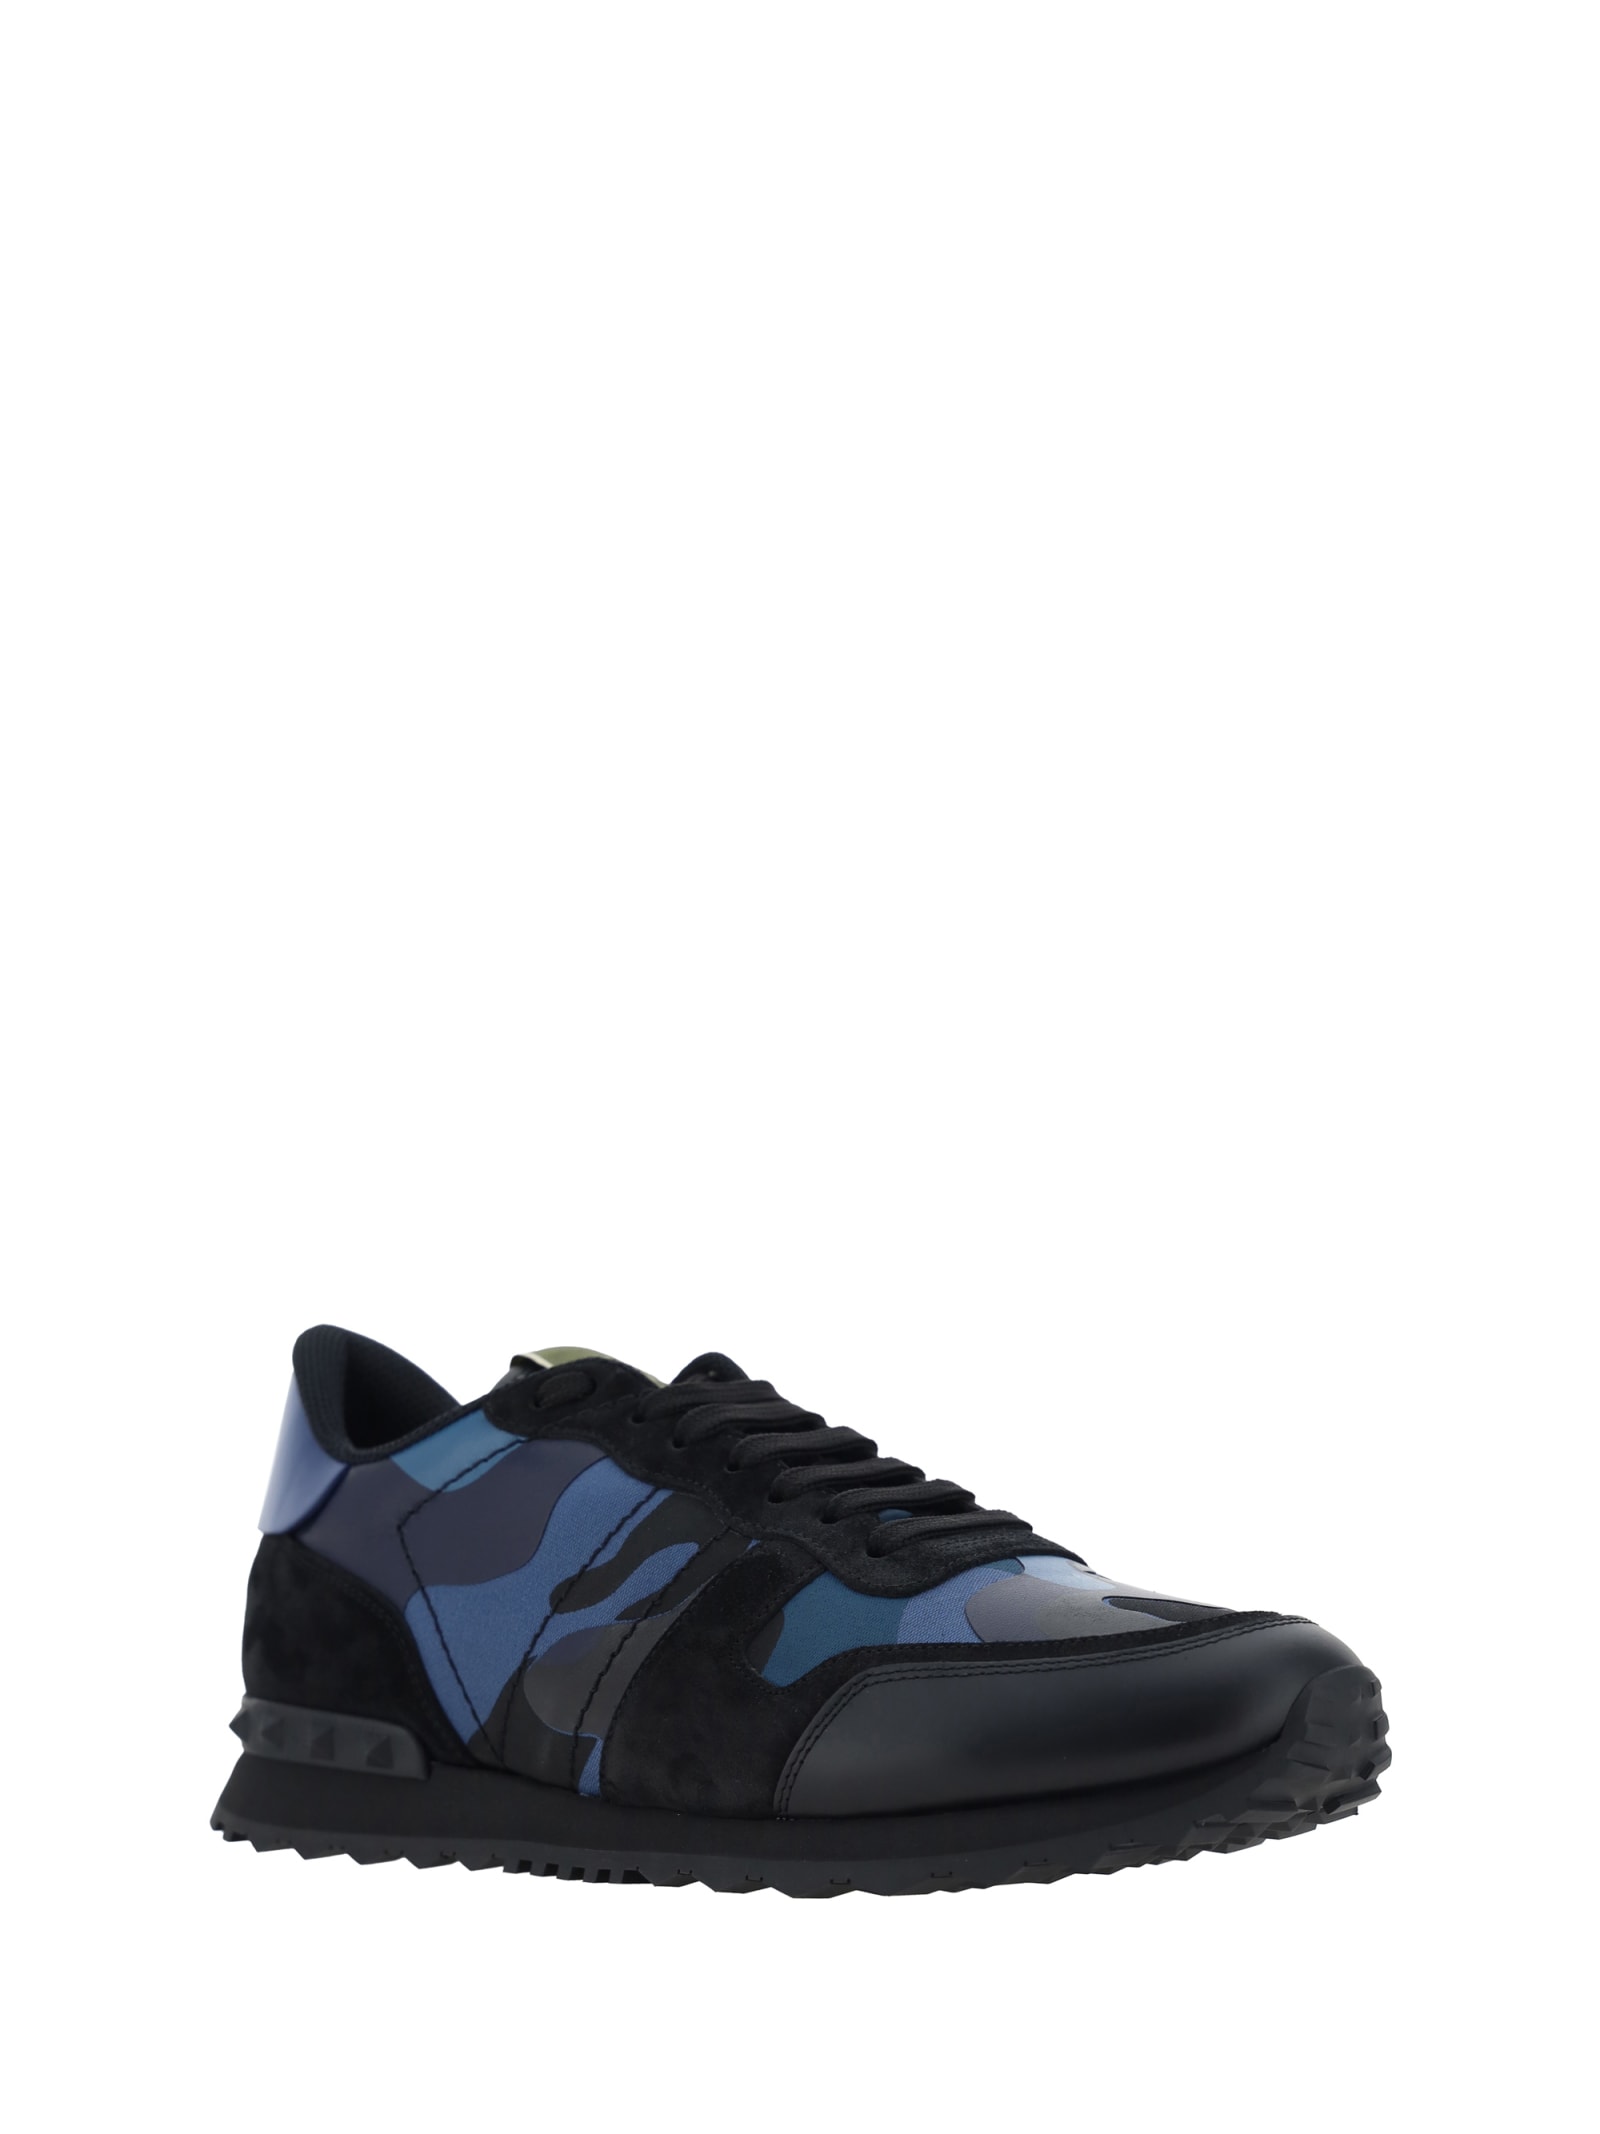 Shop Valentino Garavani Rockrunner Sneakers In Bluette-marine/nero/nero-new Baltiq